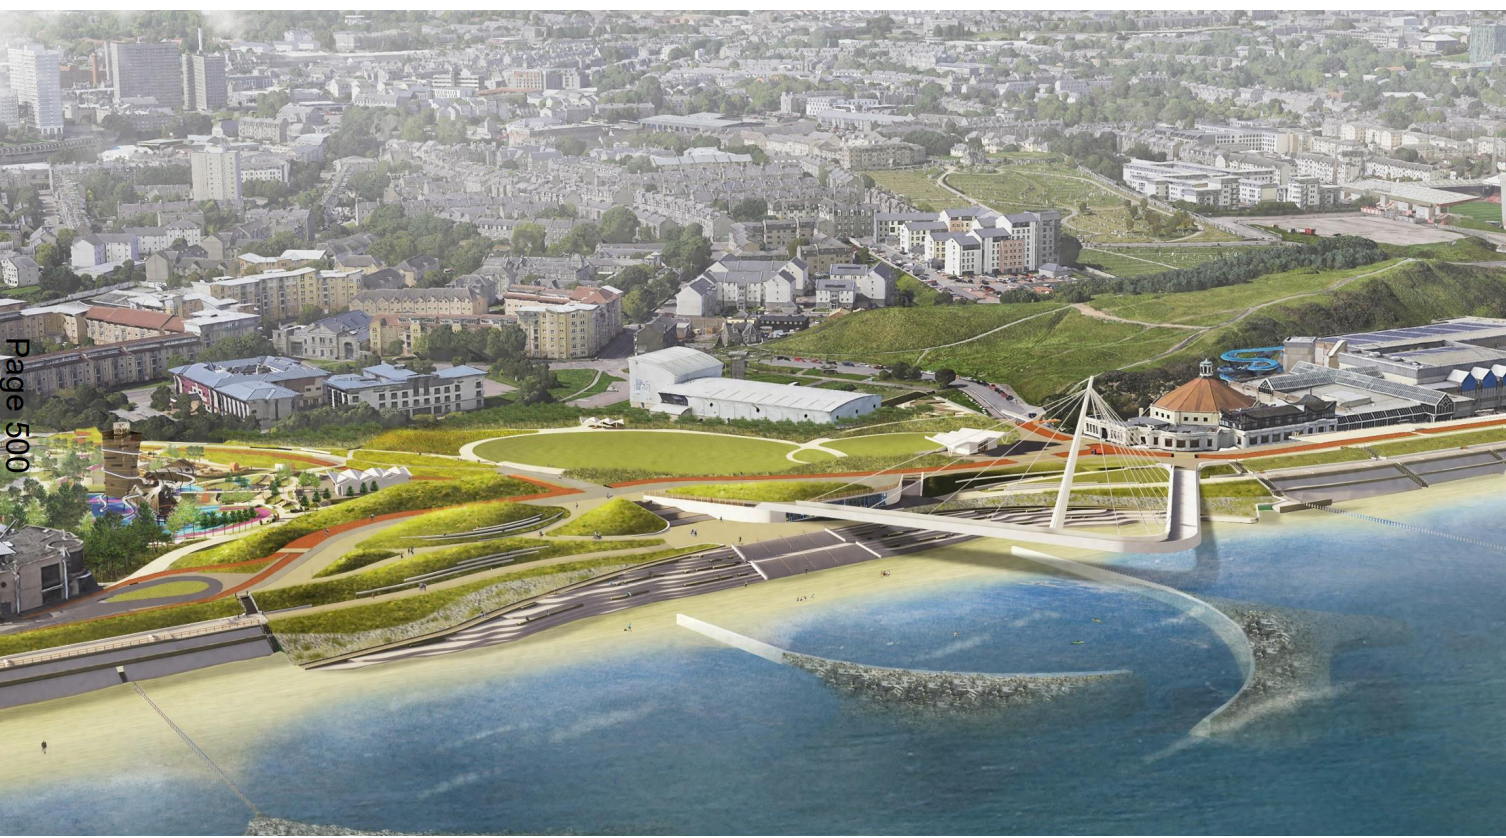 Safety the priority in Aberdeen beachfront shoreline regeneration